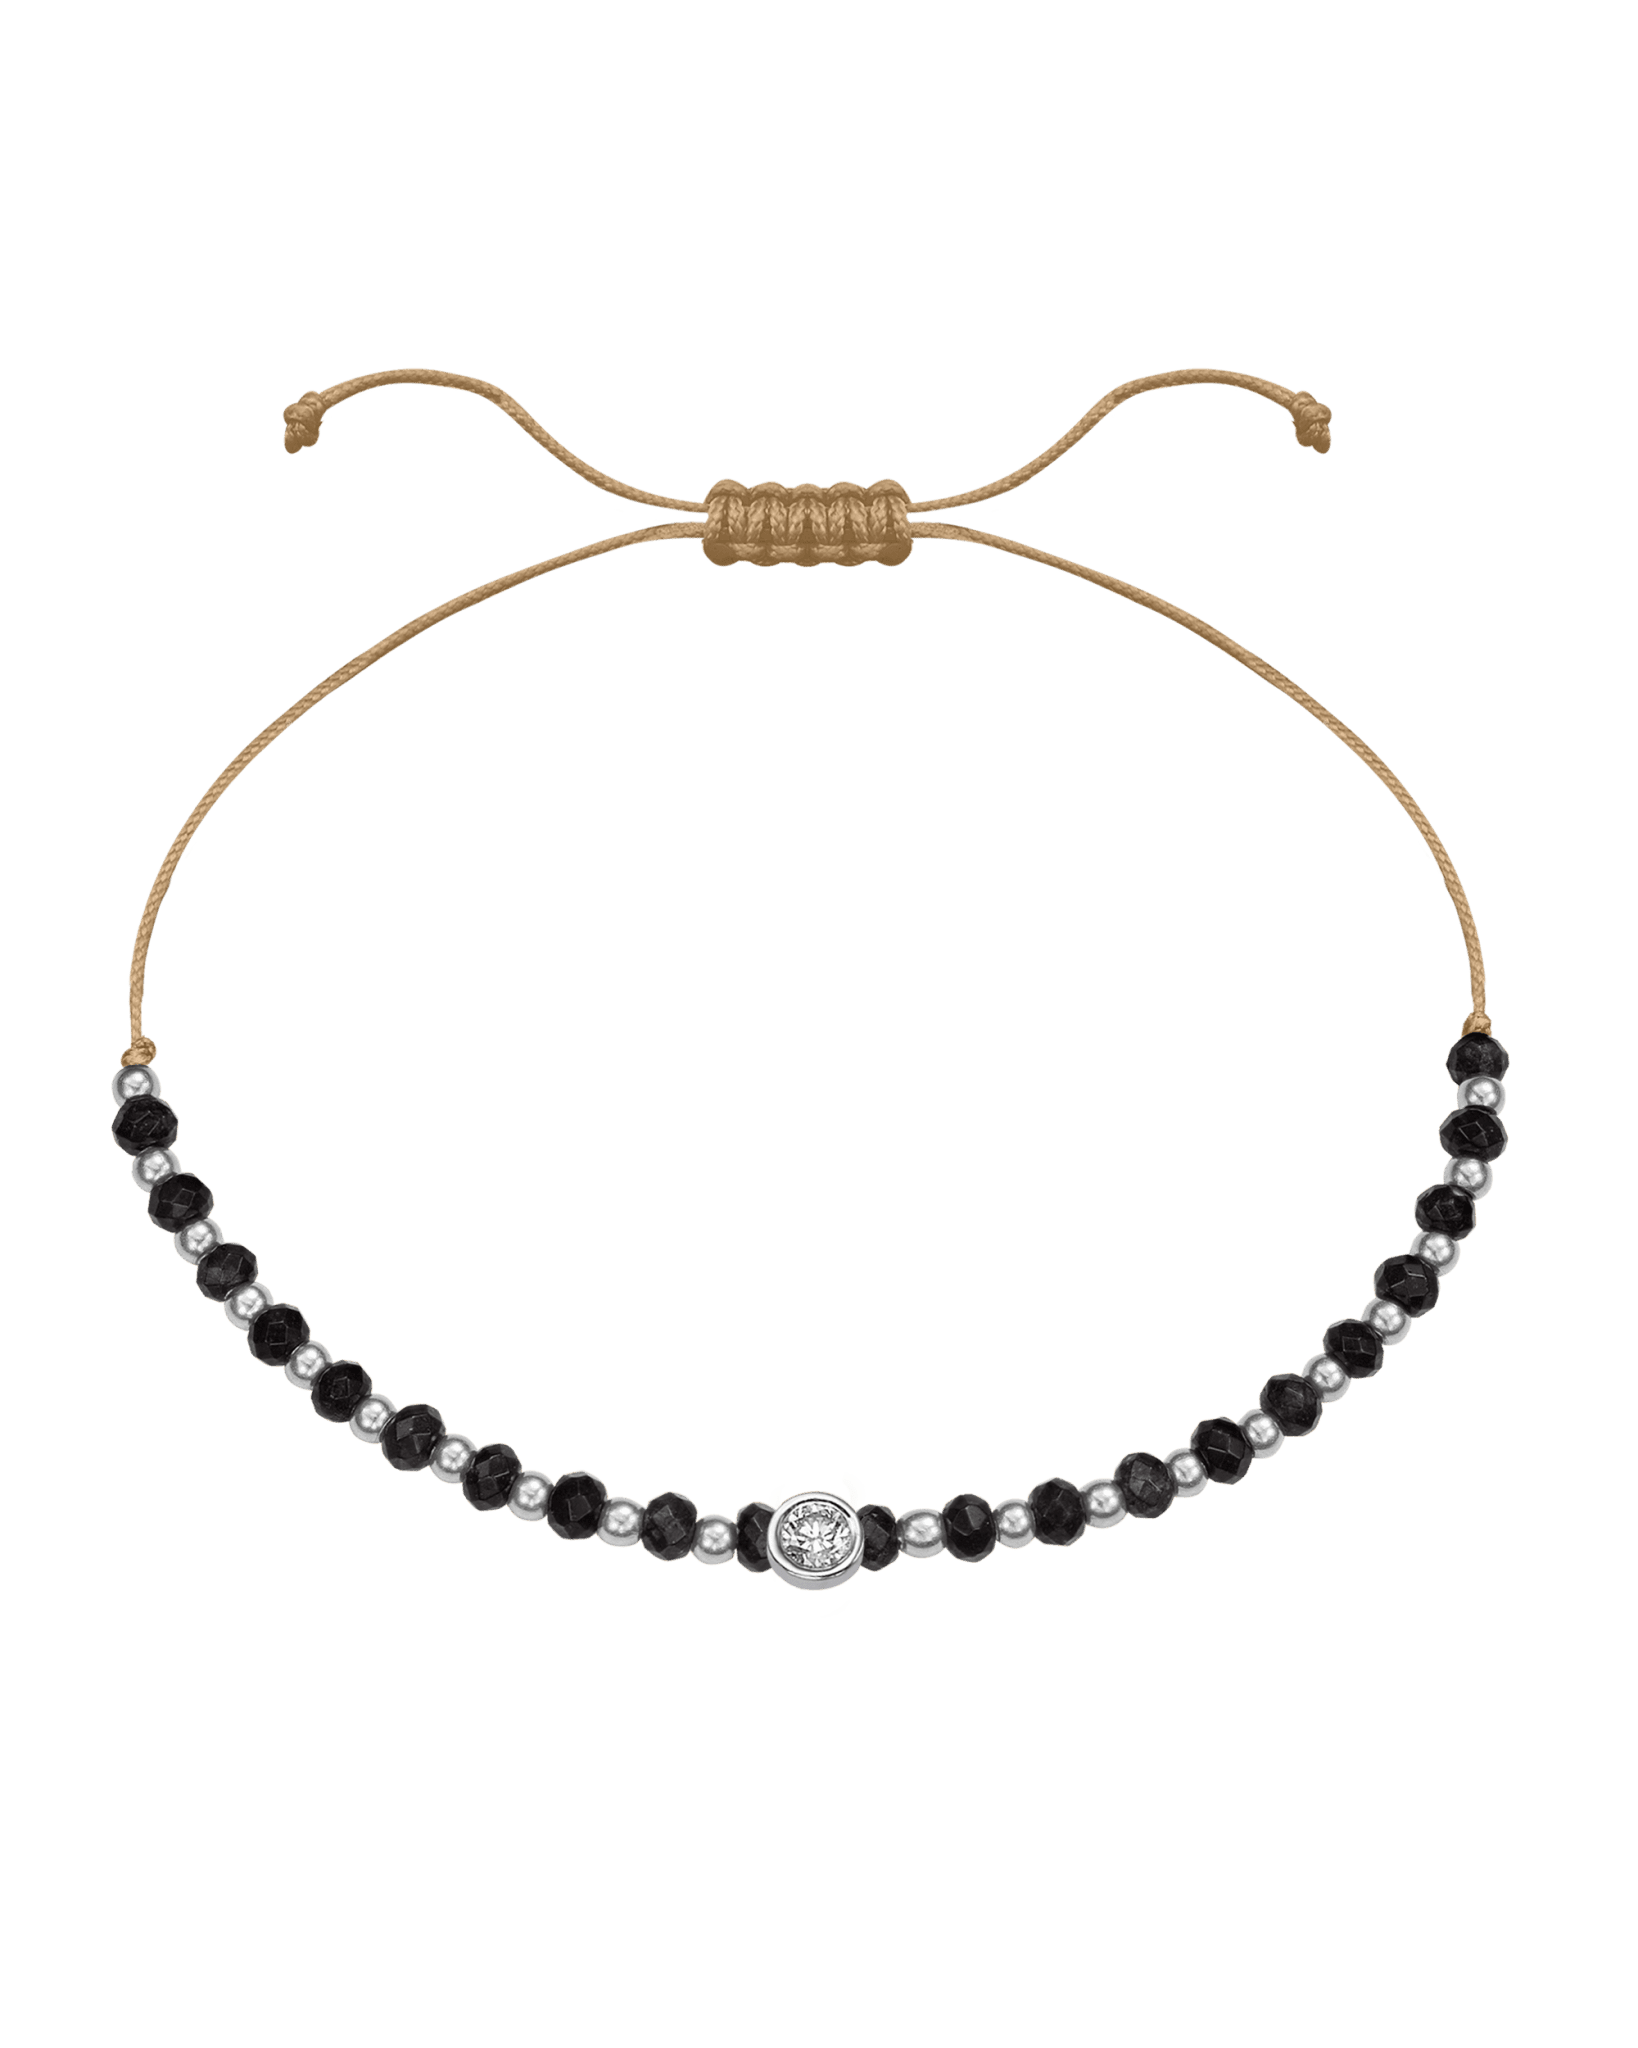 Black Onyx Gemstone String of Love Bracelet for Protection - 14K White Gold Bracelets 14K Solid Gold Camel Large: 0.1ct 